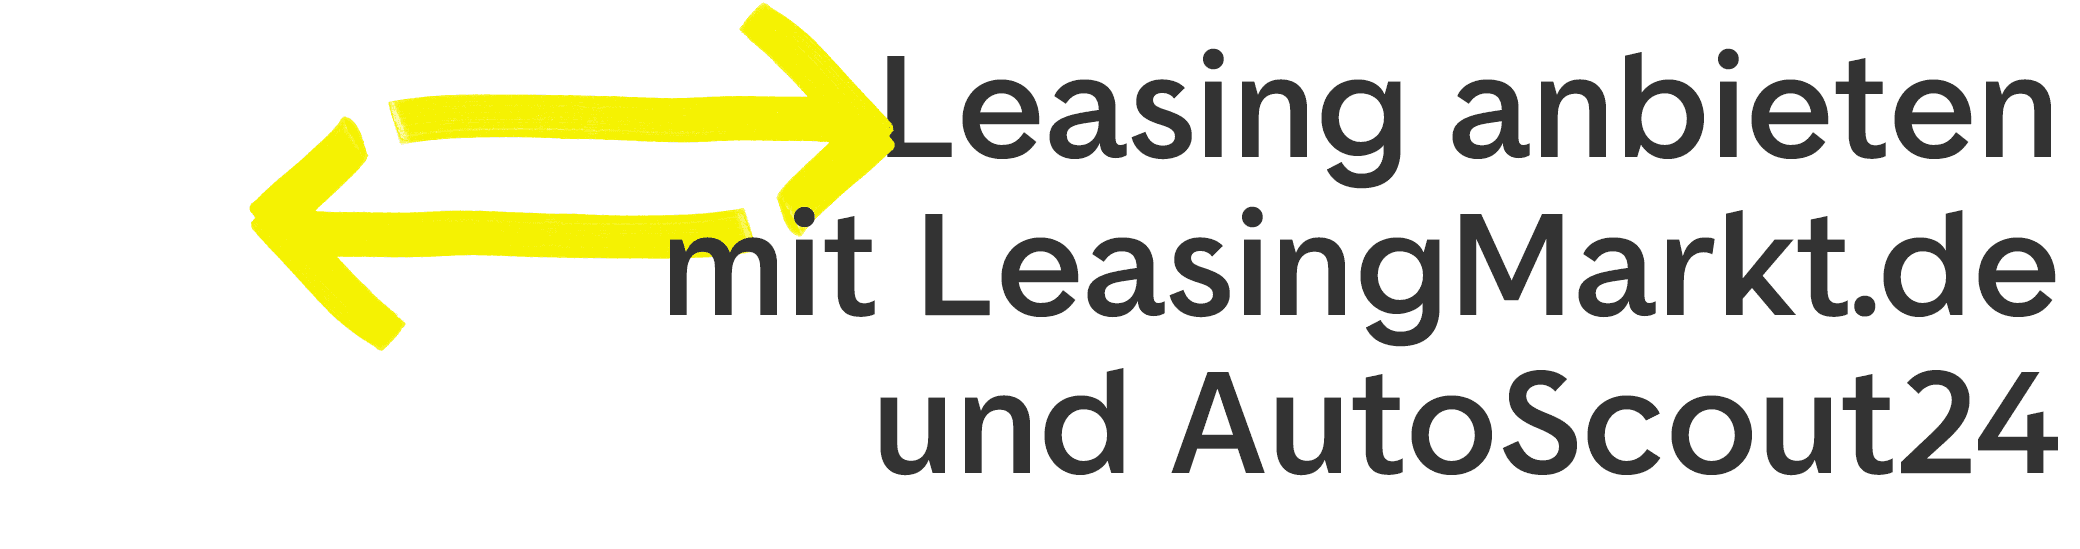 Leasing mit LeasingMarkt.de